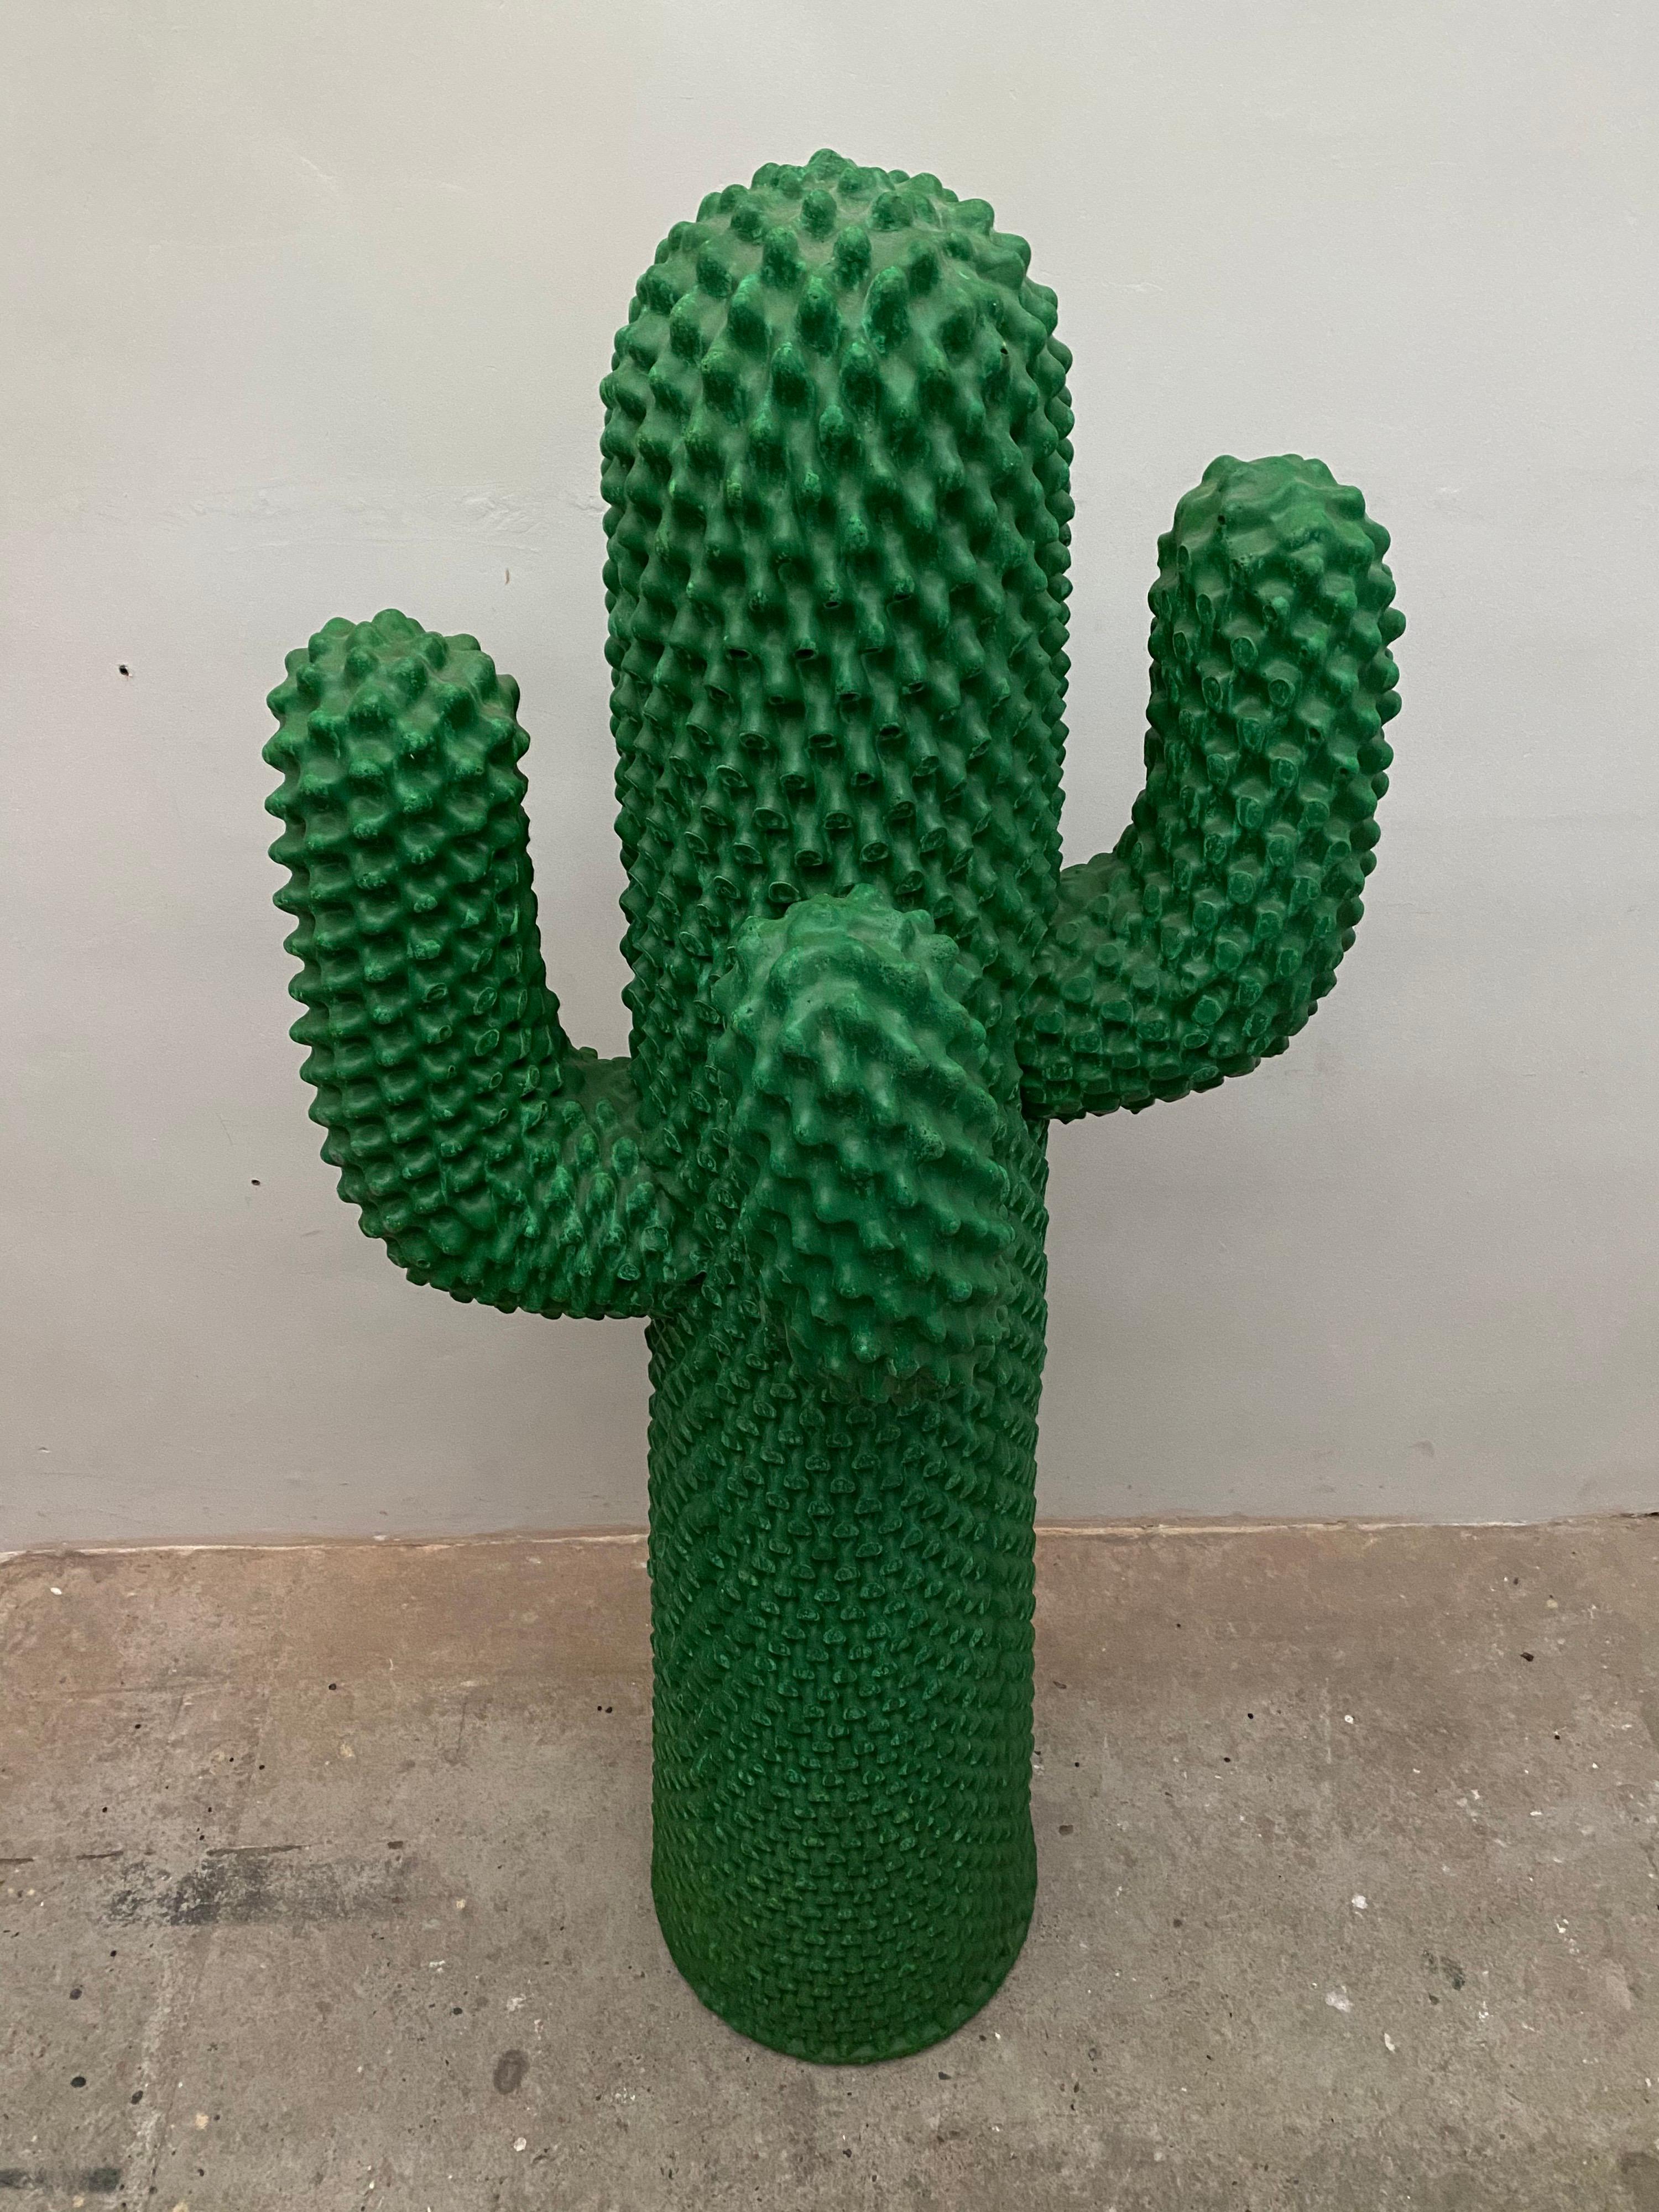 Italian Pop-Art TOTEM Cactus by Guido Drocco & Franco Mello for Gufram No. 487, Italy